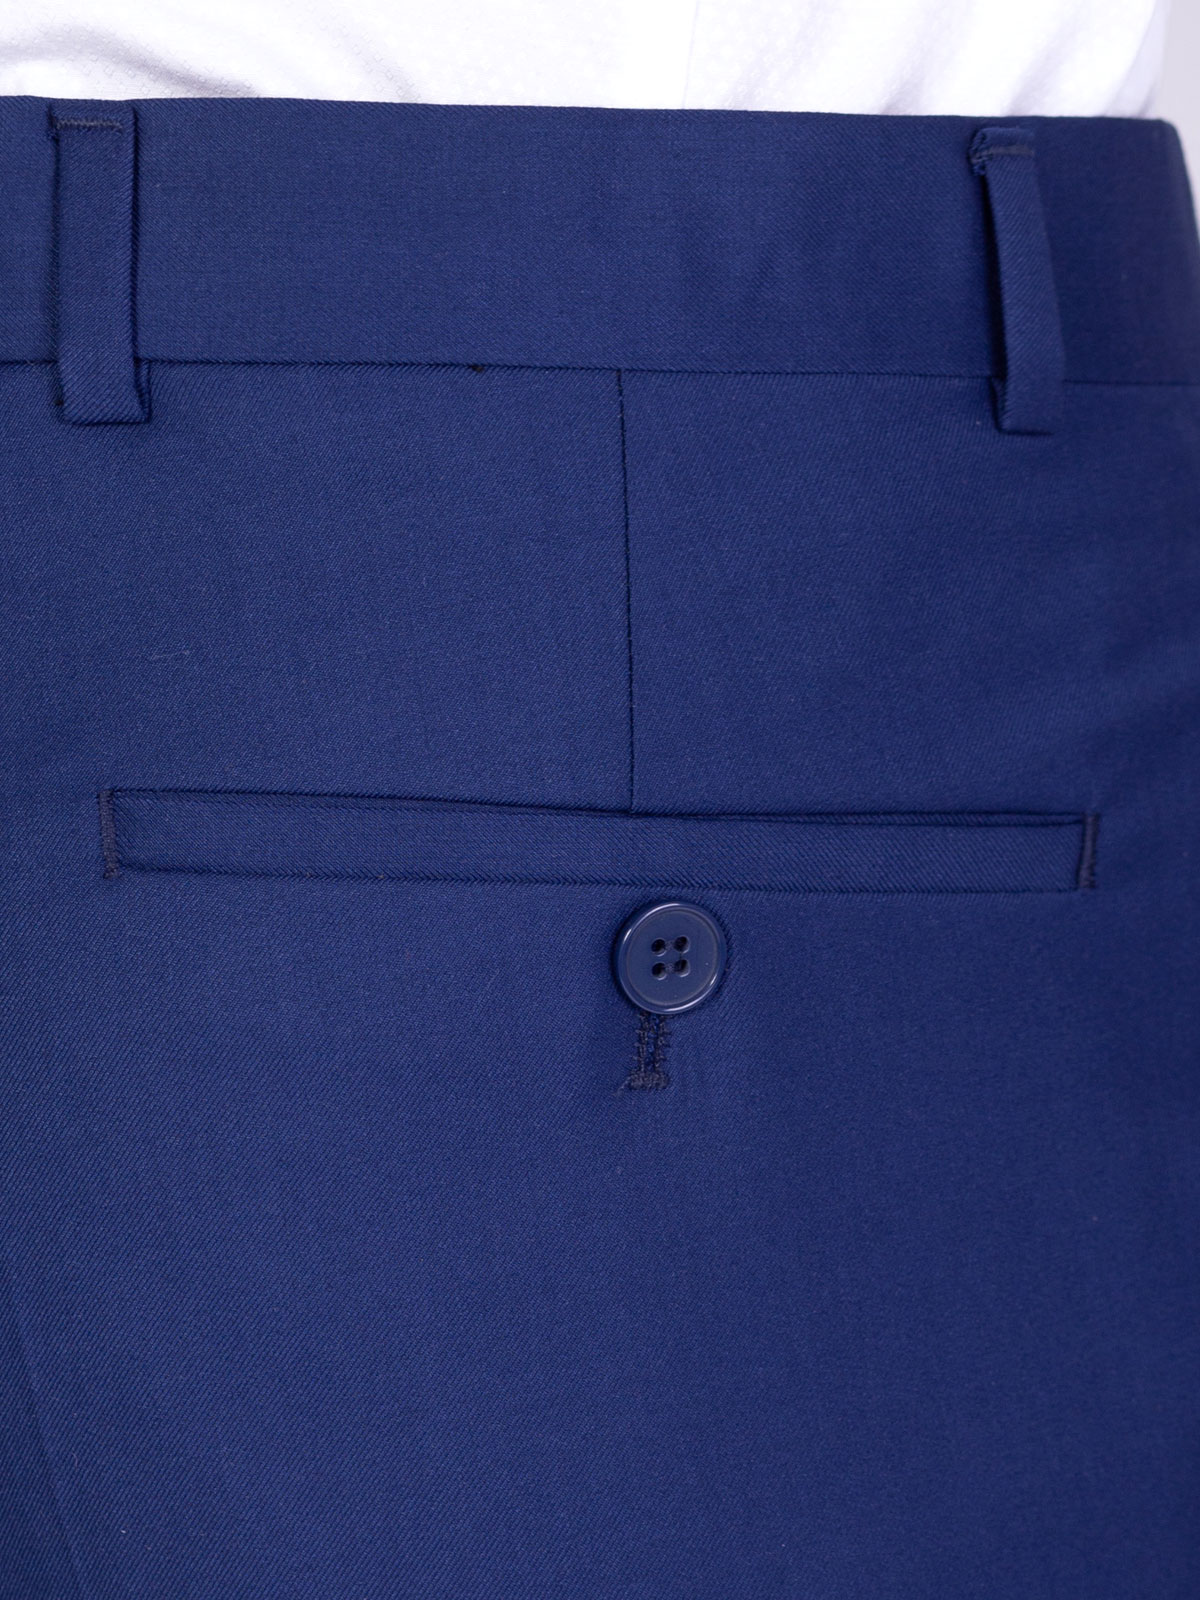 Κλασικό παντελόνι σε μπλε χρώμα - 63330 € 60.74 img4